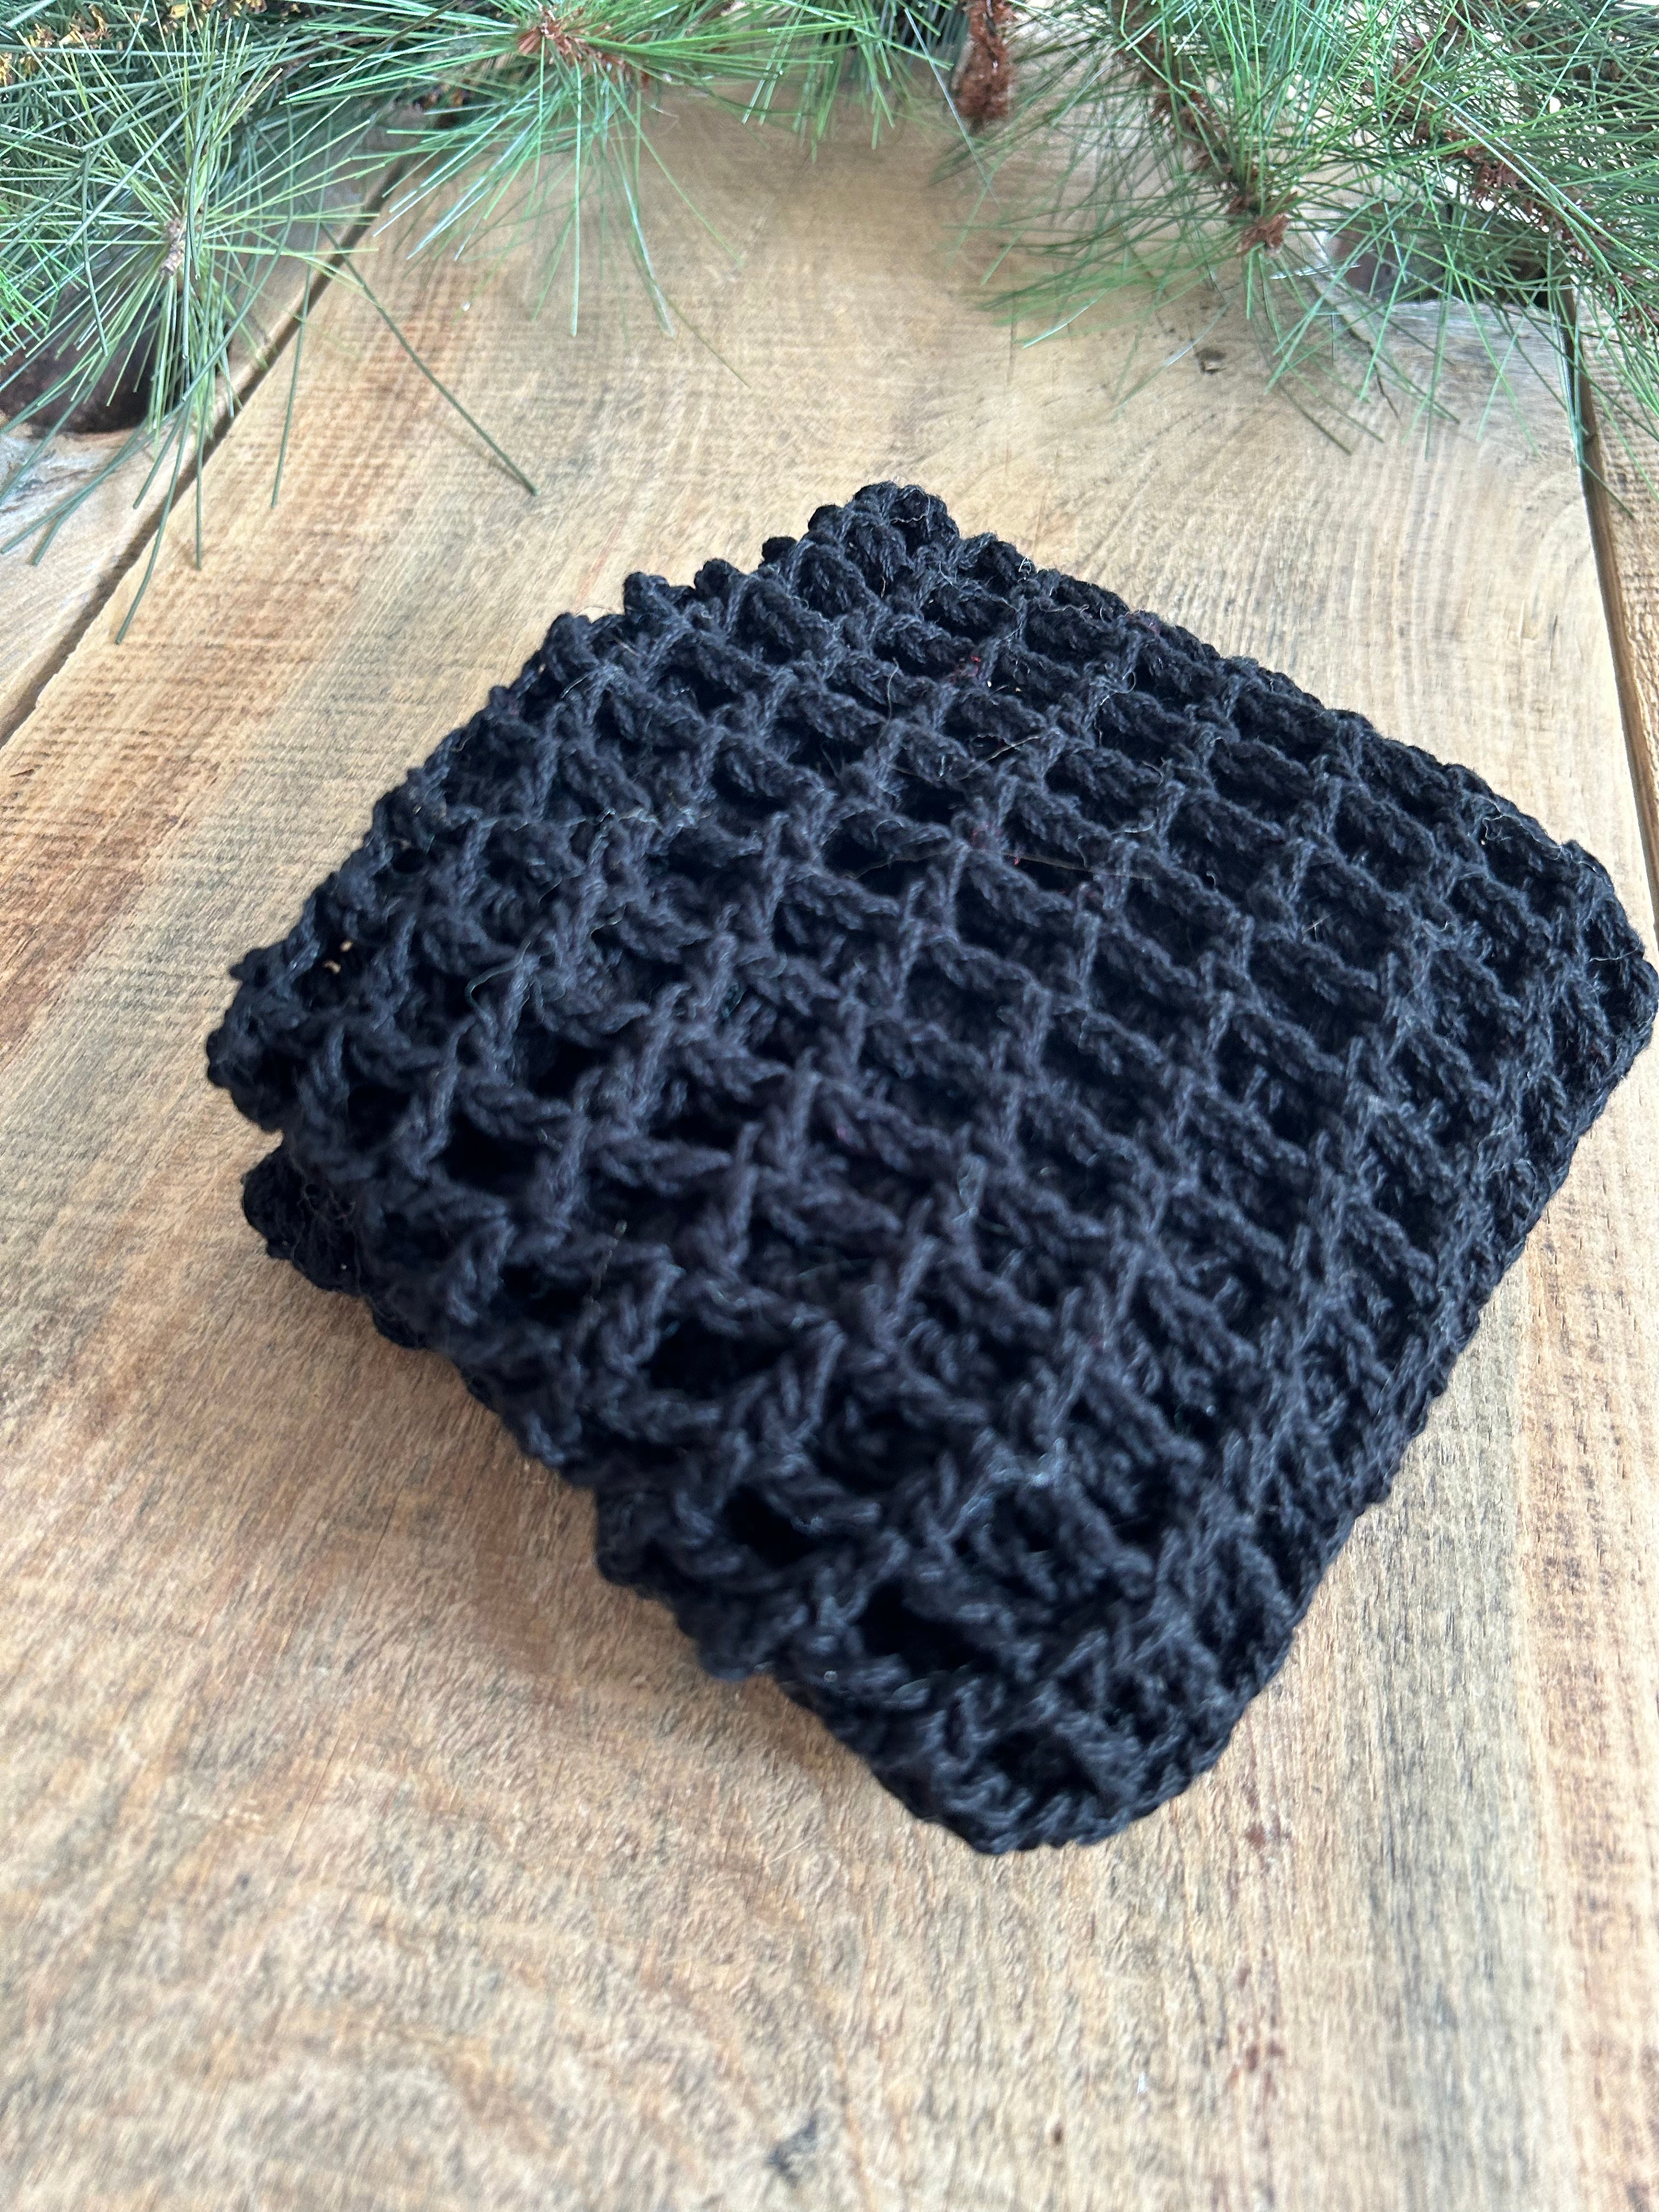 Market Bag Black Crochet Cotton